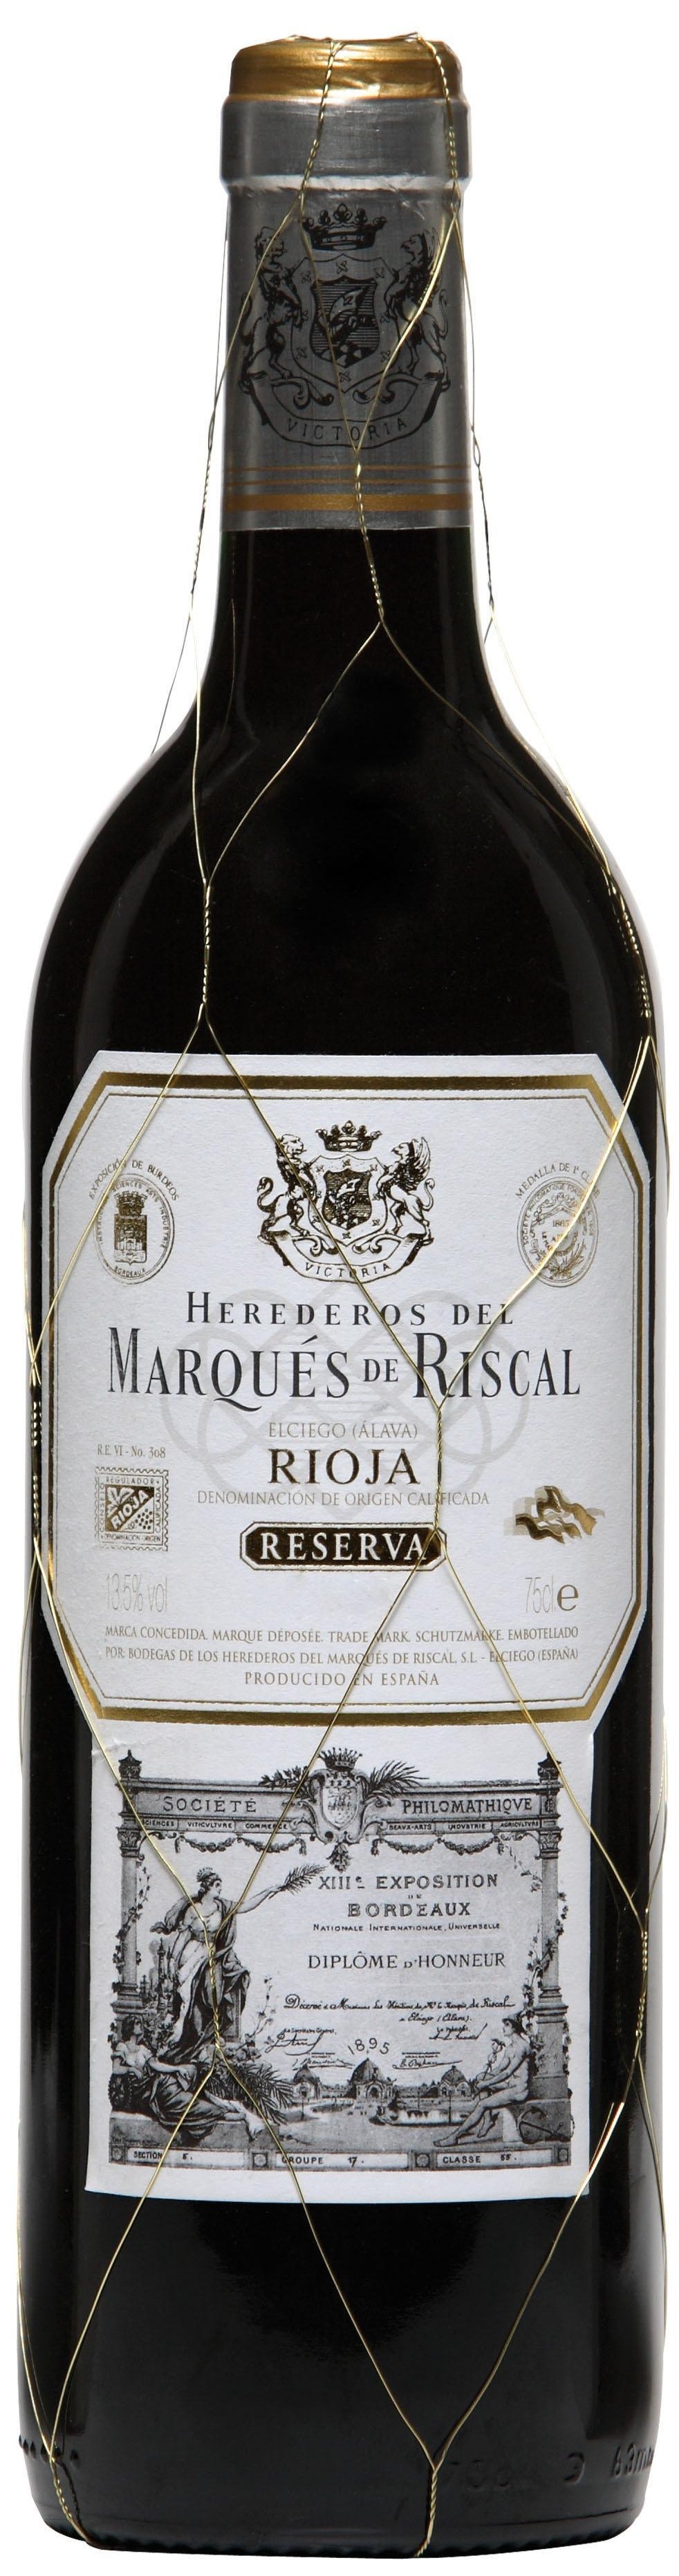 Rioja Reserva 2017 Marqués de Riscal 0,375l